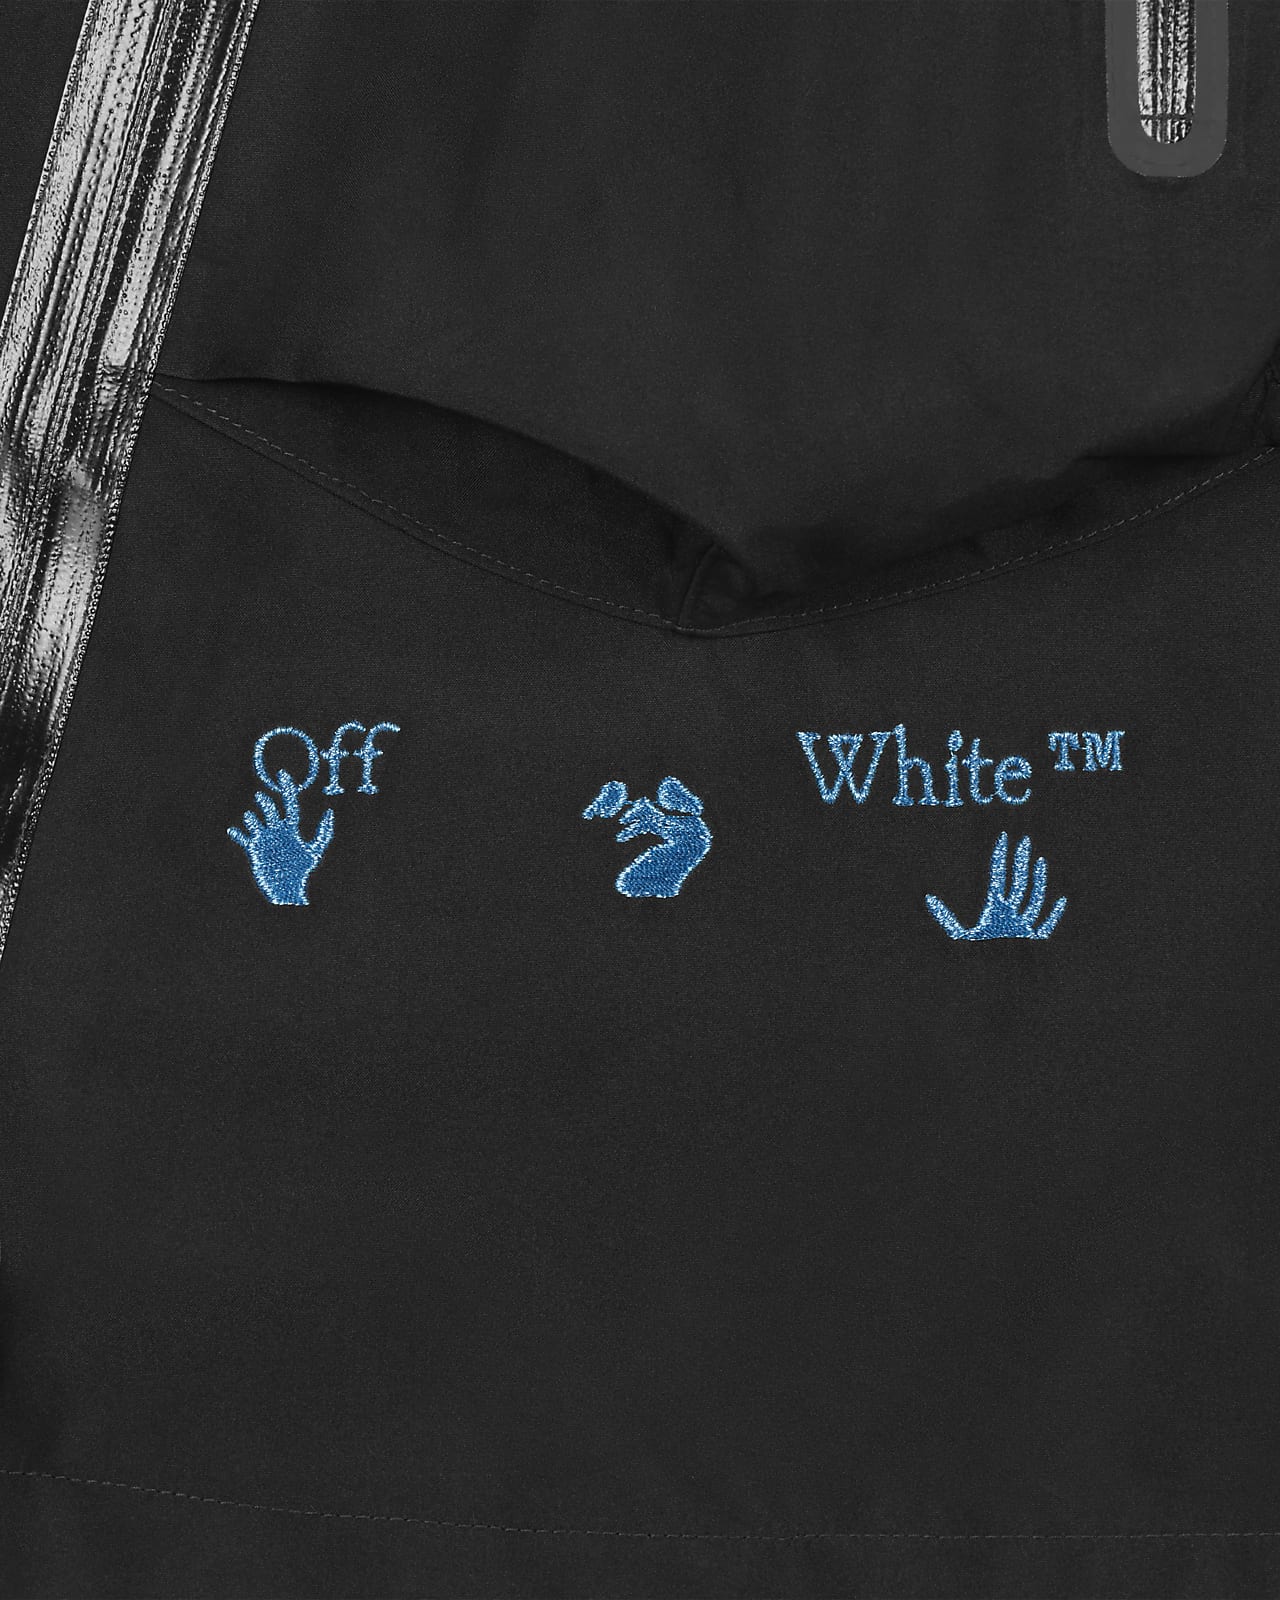 NIKE公式】ナイキ x オフホワイト™ メンズジャケット.オンラインストア